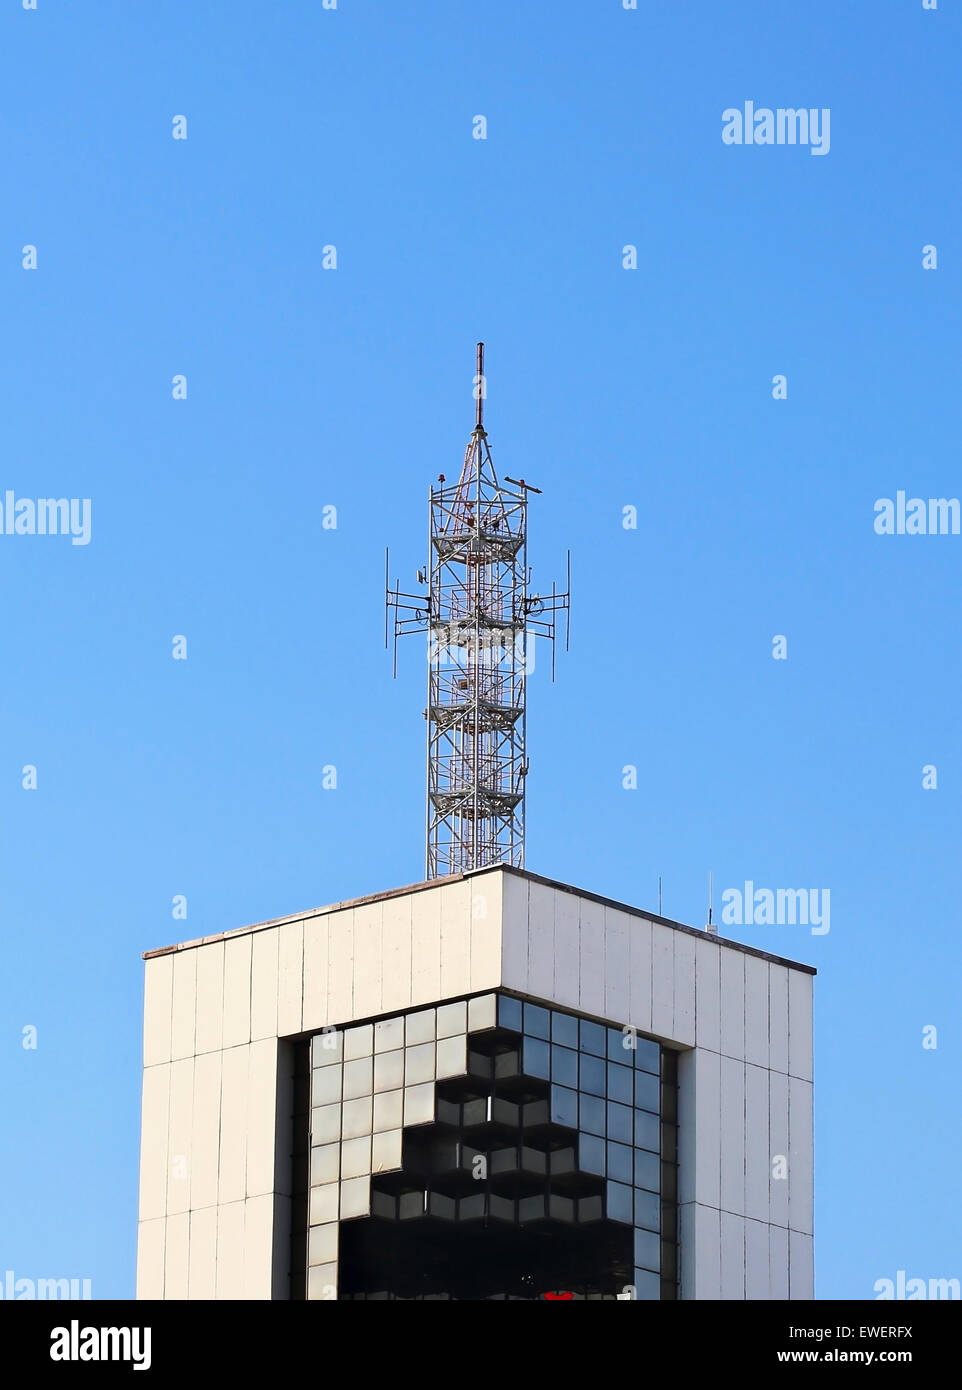 L'antenne métallique sur le toit de l'immeuble de haute technologie Banque D'Images